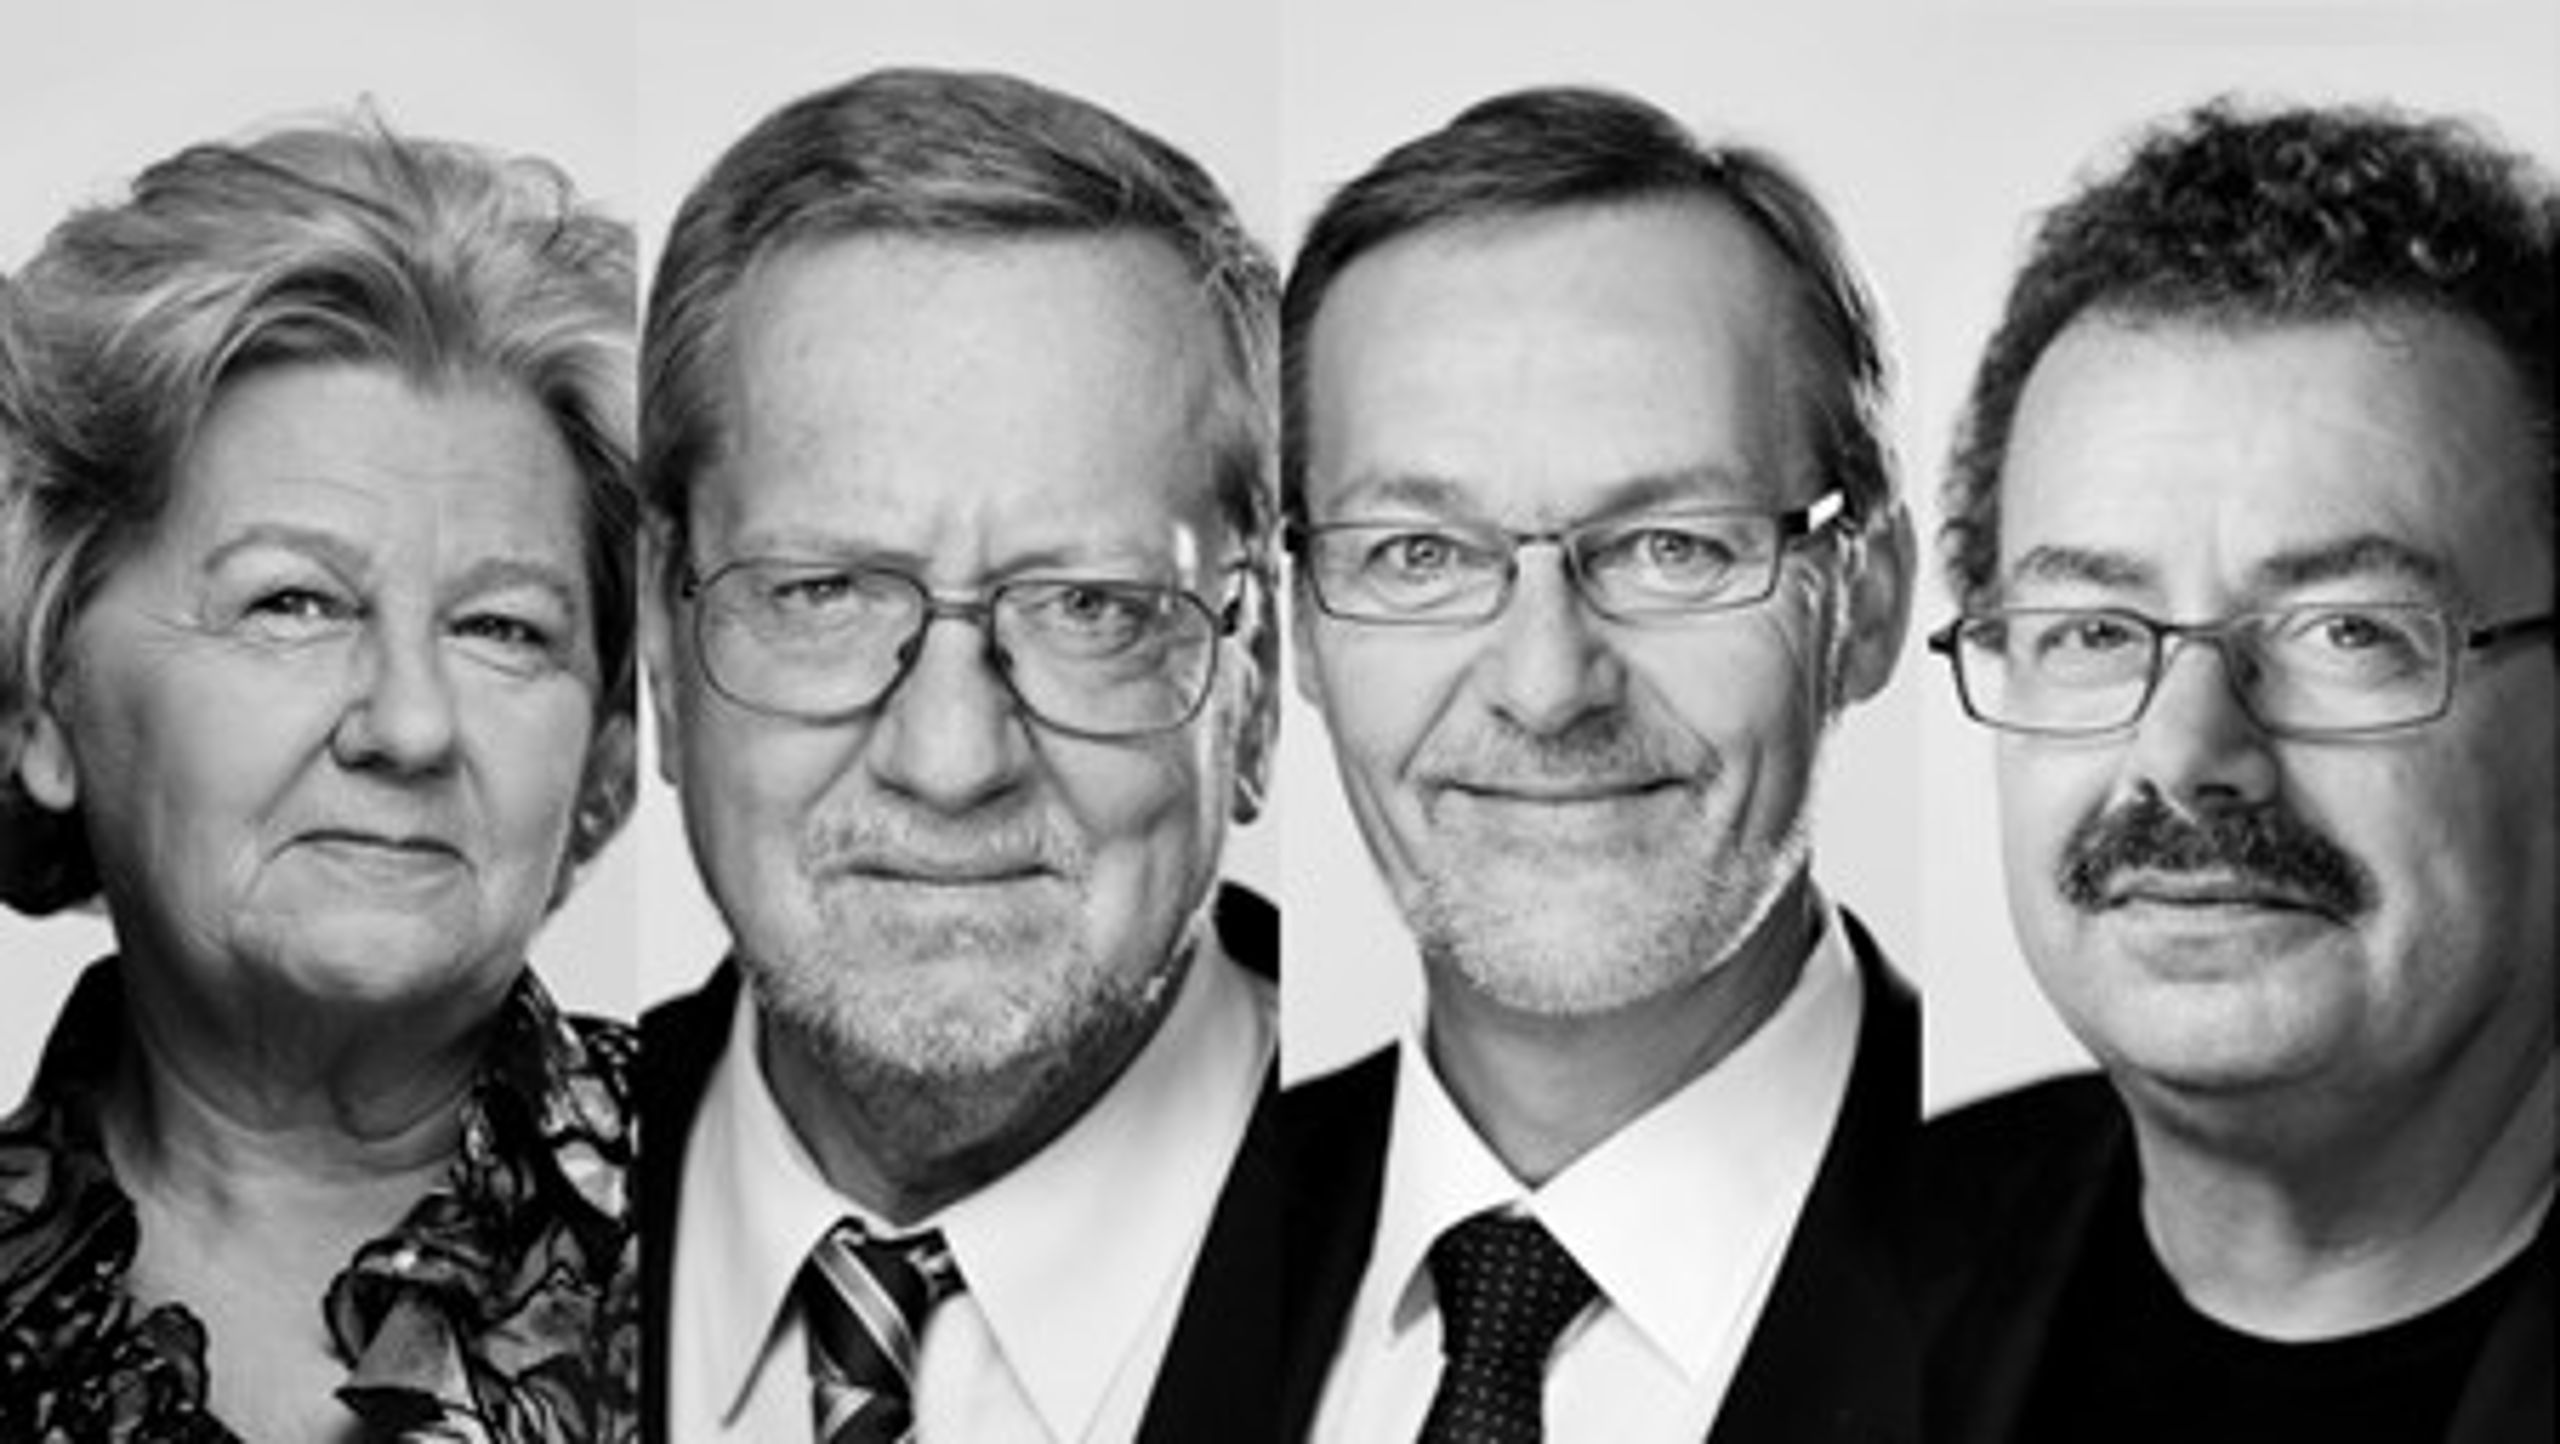 Birthe Rønn Hornbech&nbsp;(V), Per Stig Møller (K), Ole Sohn (S) og Per Clausen (EL) er nogle af de folketingsmedlemmer, som vi med sikkerhed skal sige farvel til efter valget.&nbsp;